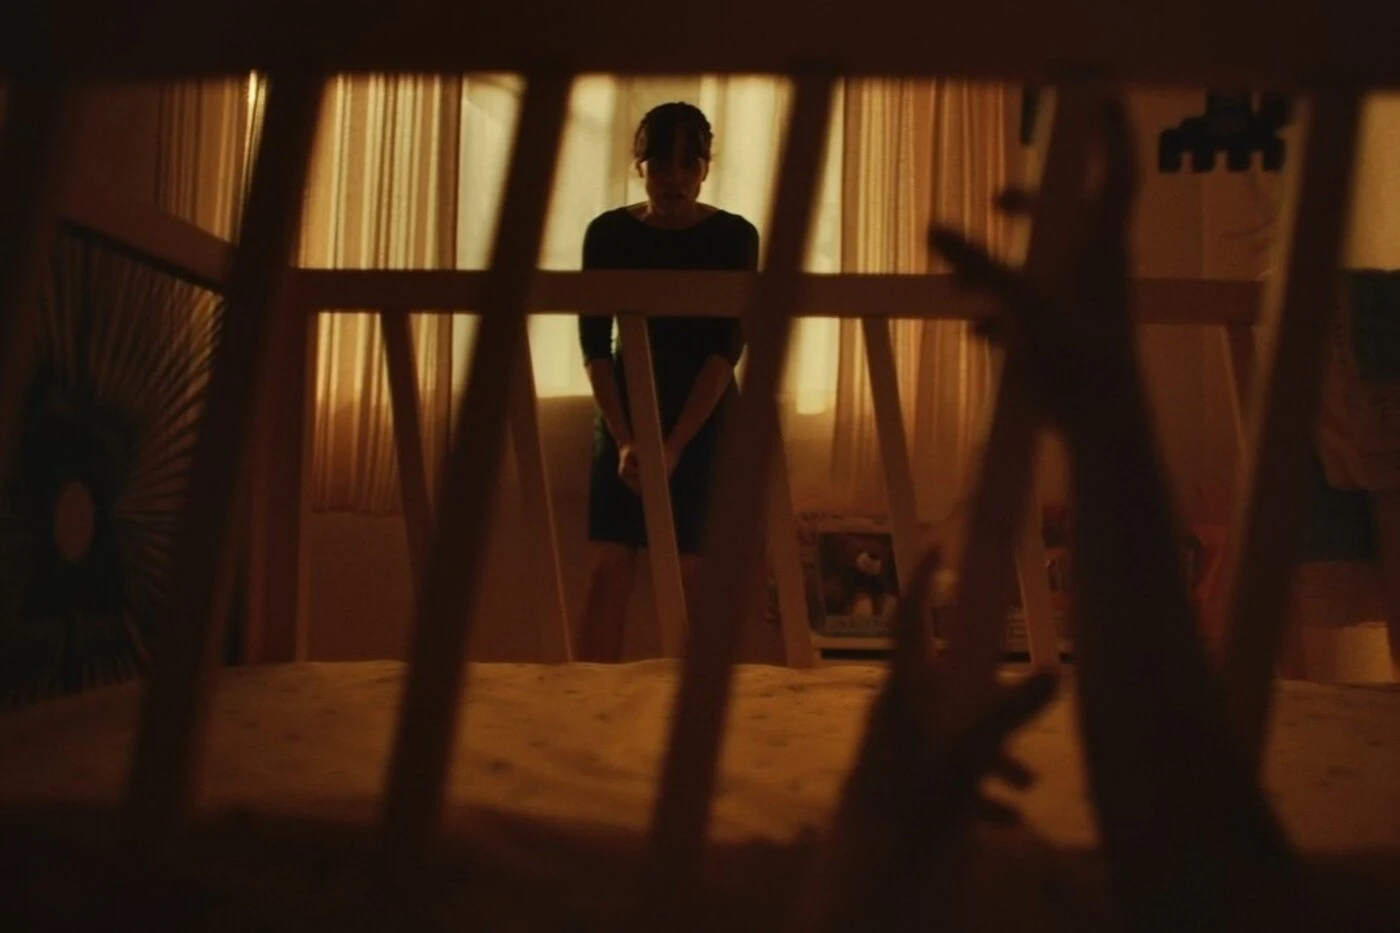 eine Frau steht vor einem Kinderbett, an den Gitterstäben des Bettes klettern kleine Hände empor